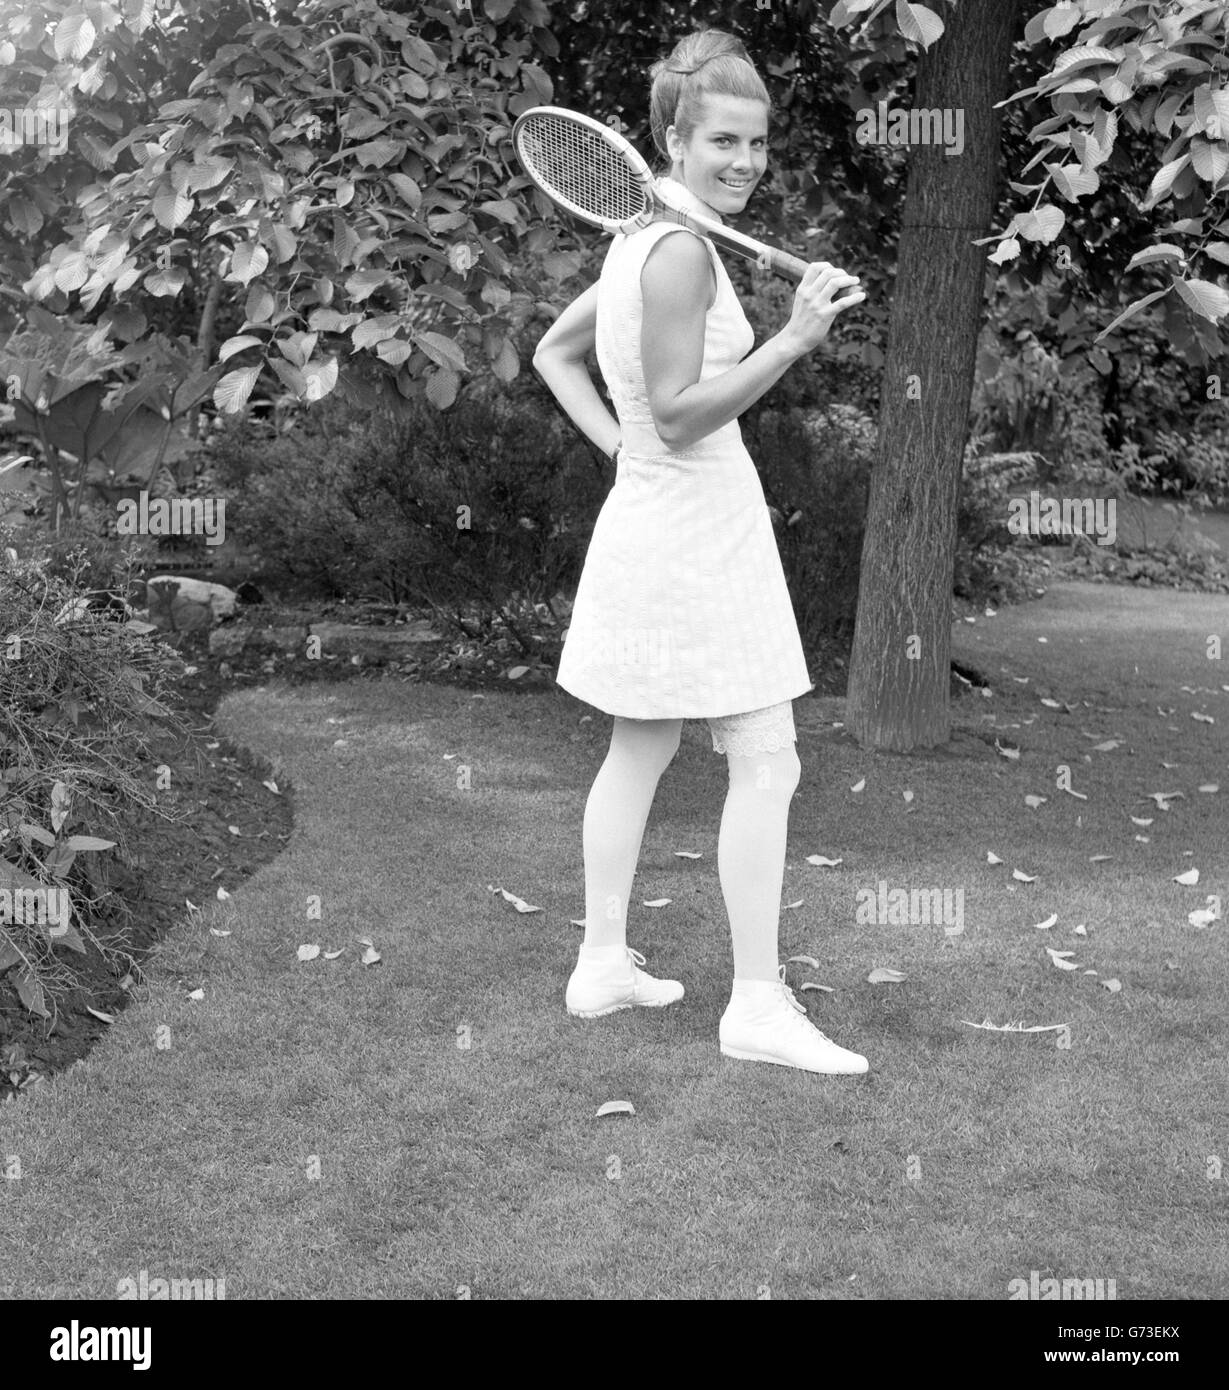 La joueuse grecque Carole Kalogeropoulos a modé une robe Teddy Tinling avant le début de Wimbledon.Elle a posé pour des photos sur le jardin sur le toit de Derry & Toms à Kensington. Banque D'Images